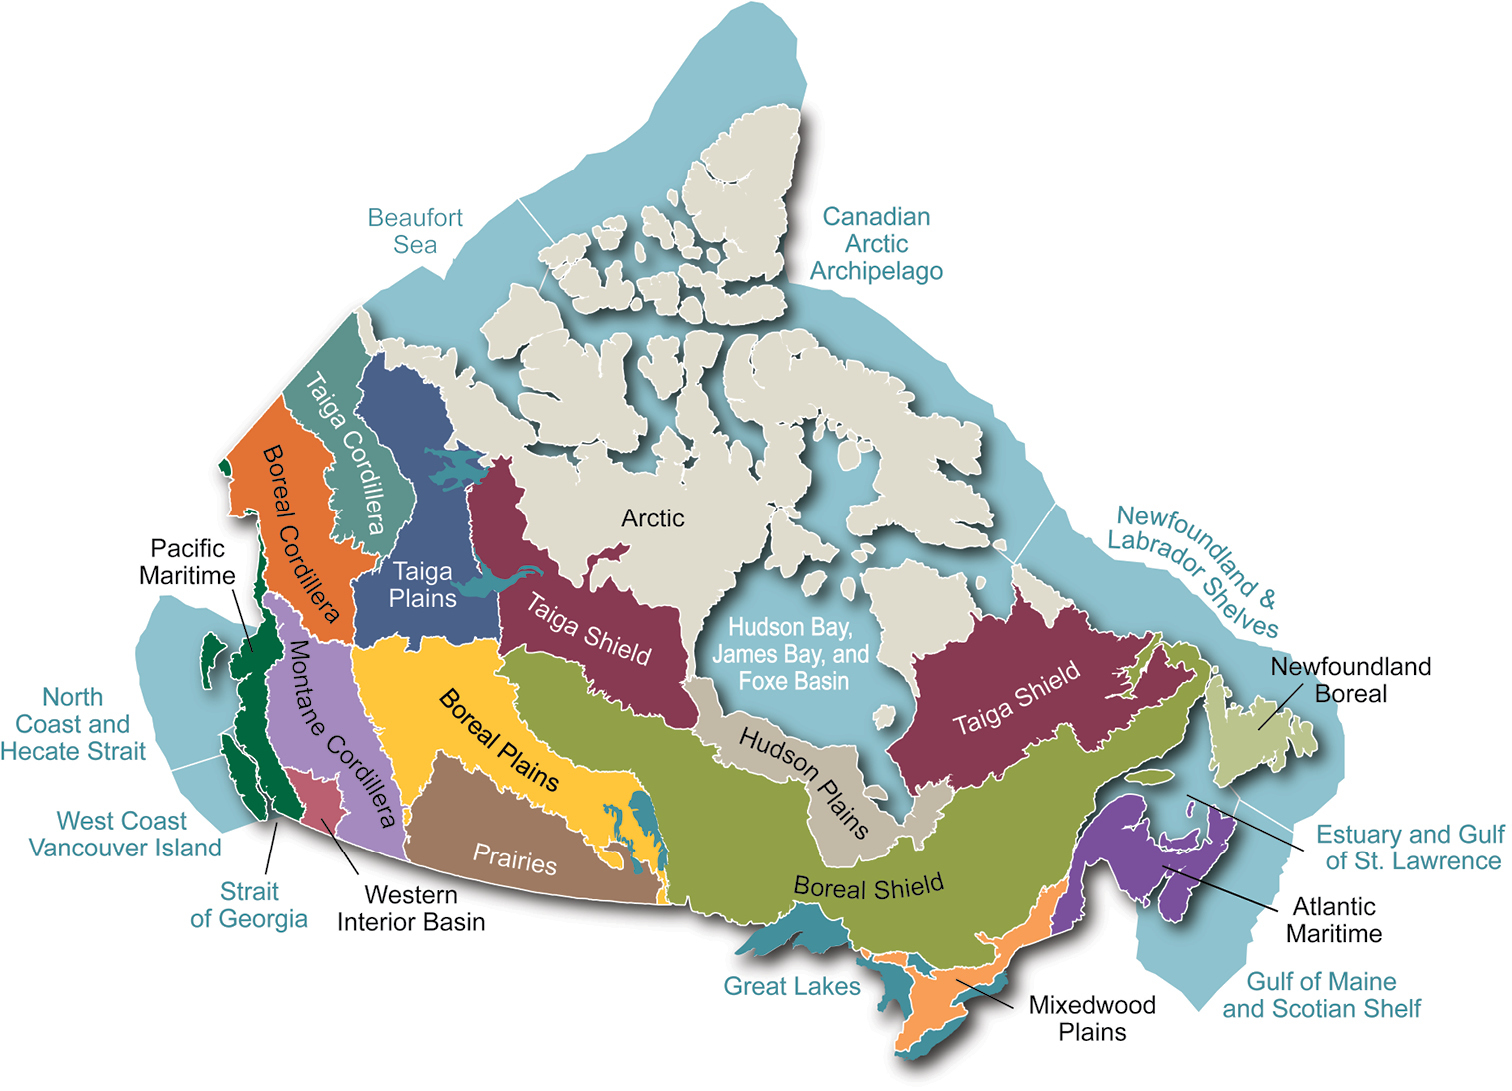 Архипелаг канадский арктический на карте северной америки. Канадский Арктический остров на карте Северной Америки. Канадский Арктический архипелаг на карте. Остров канадский Арктический архипелаг на карте. Канадский Арктический архипелаг на карте Северной Америки.